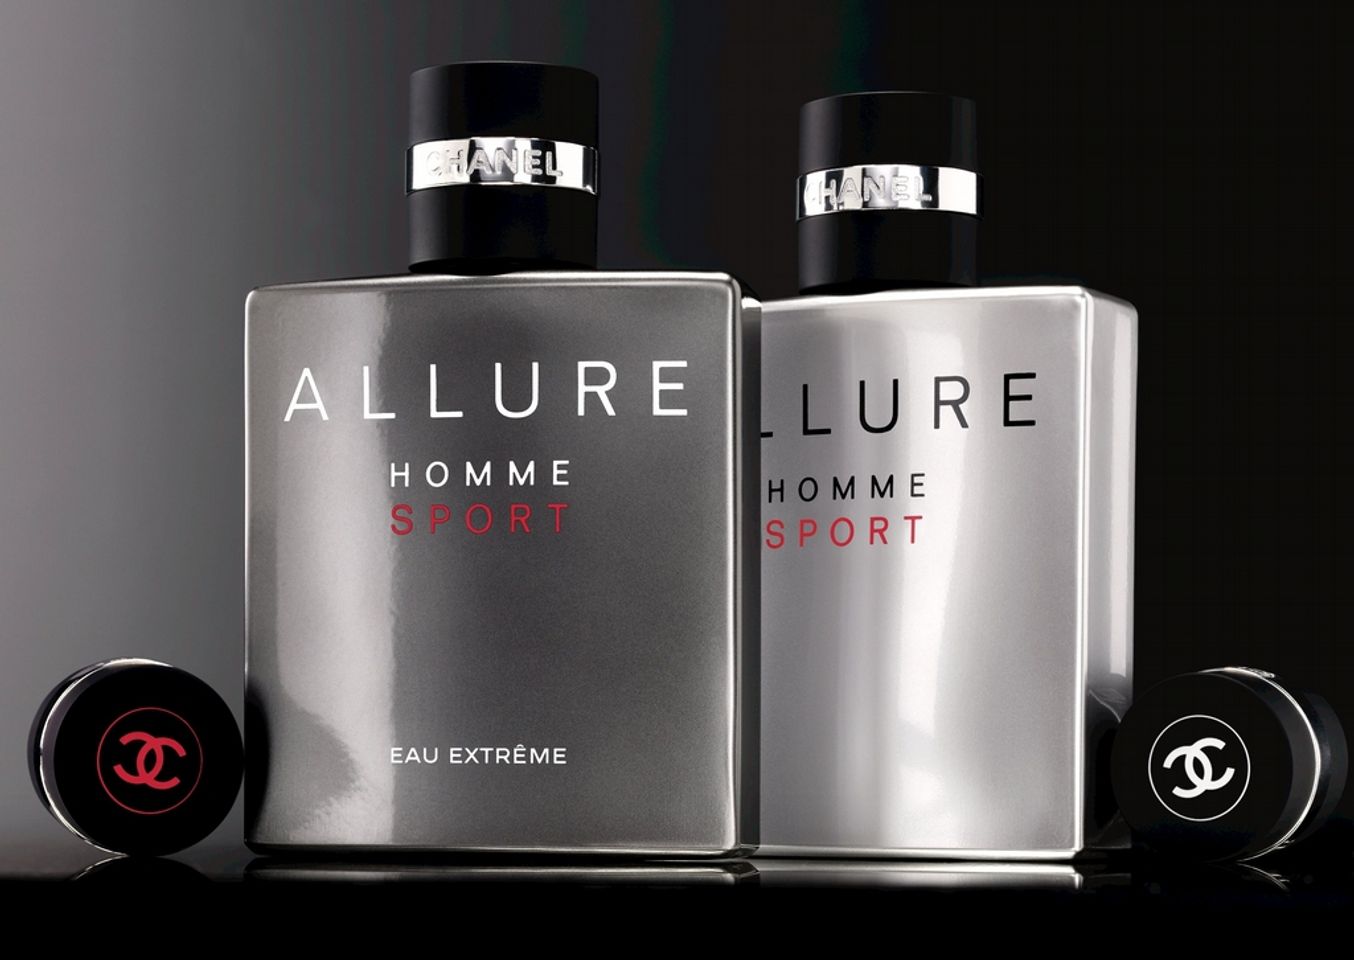 Chanel Allure homme sport Eau Extreme là dòng nước hoa thế hệ mới, cải tiến hơn, thơm lâu hơn so với dòng Chanel Allure homme sport